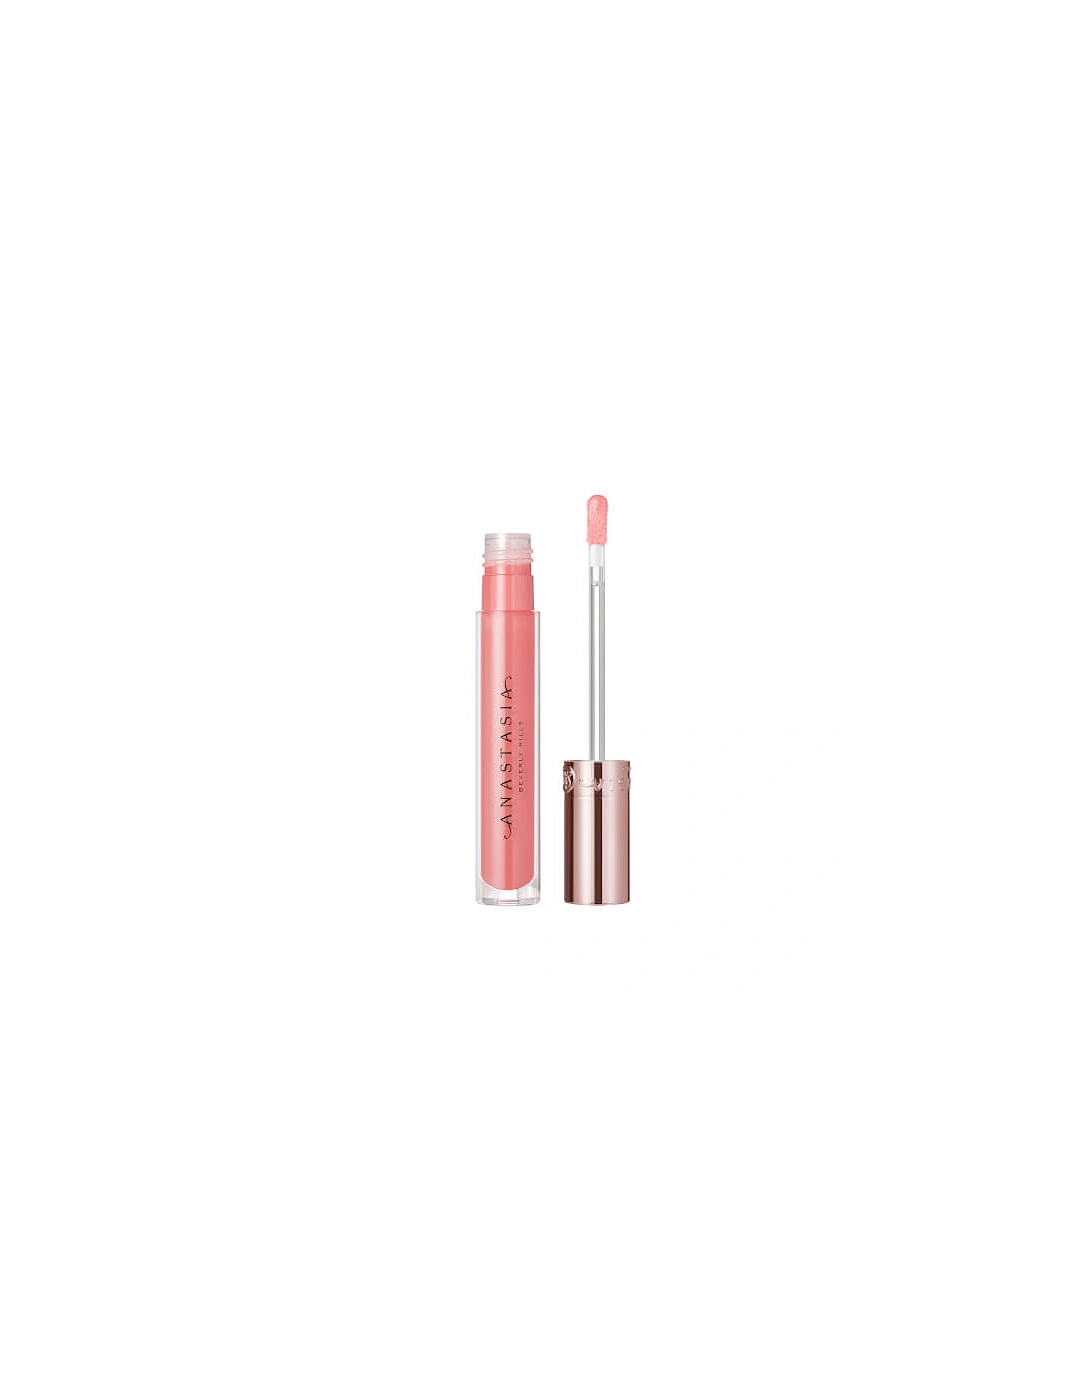 Lip Gloss - Soft Pink, 2 of 1